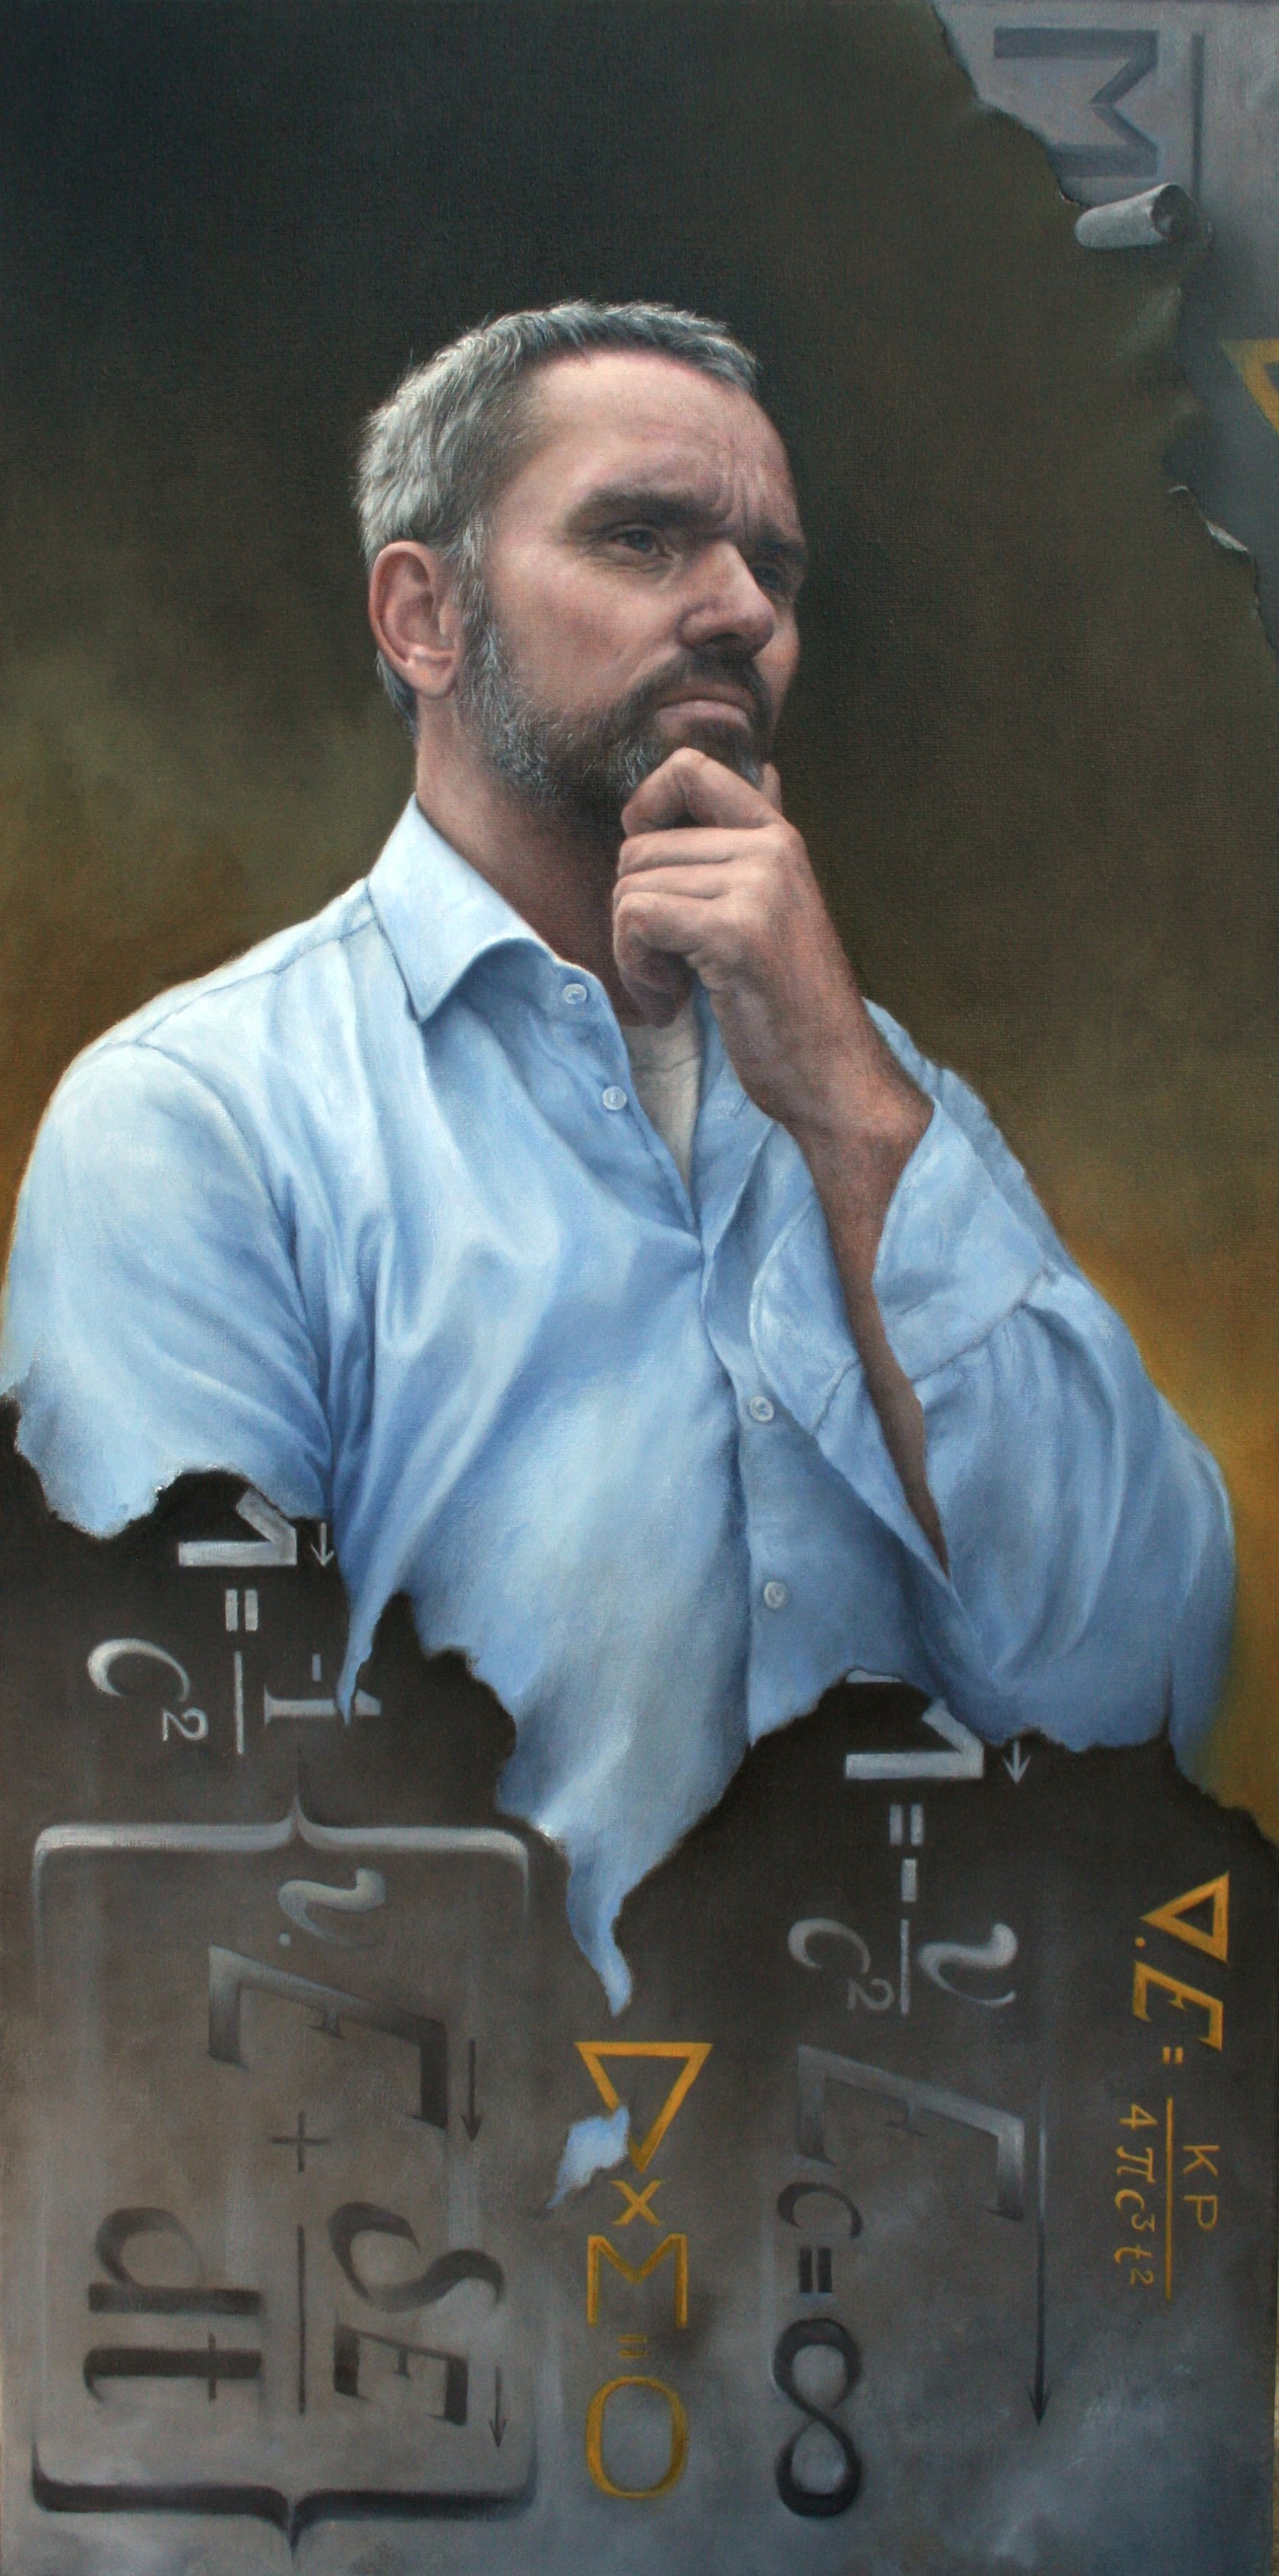 Portret van Mathematics Man, een wetenschappelijk onderzoeker. Zijn vernieuwende wiskundige formules zijn verwerkt in het portret. Gemaakt door portretschilder Els Vink.